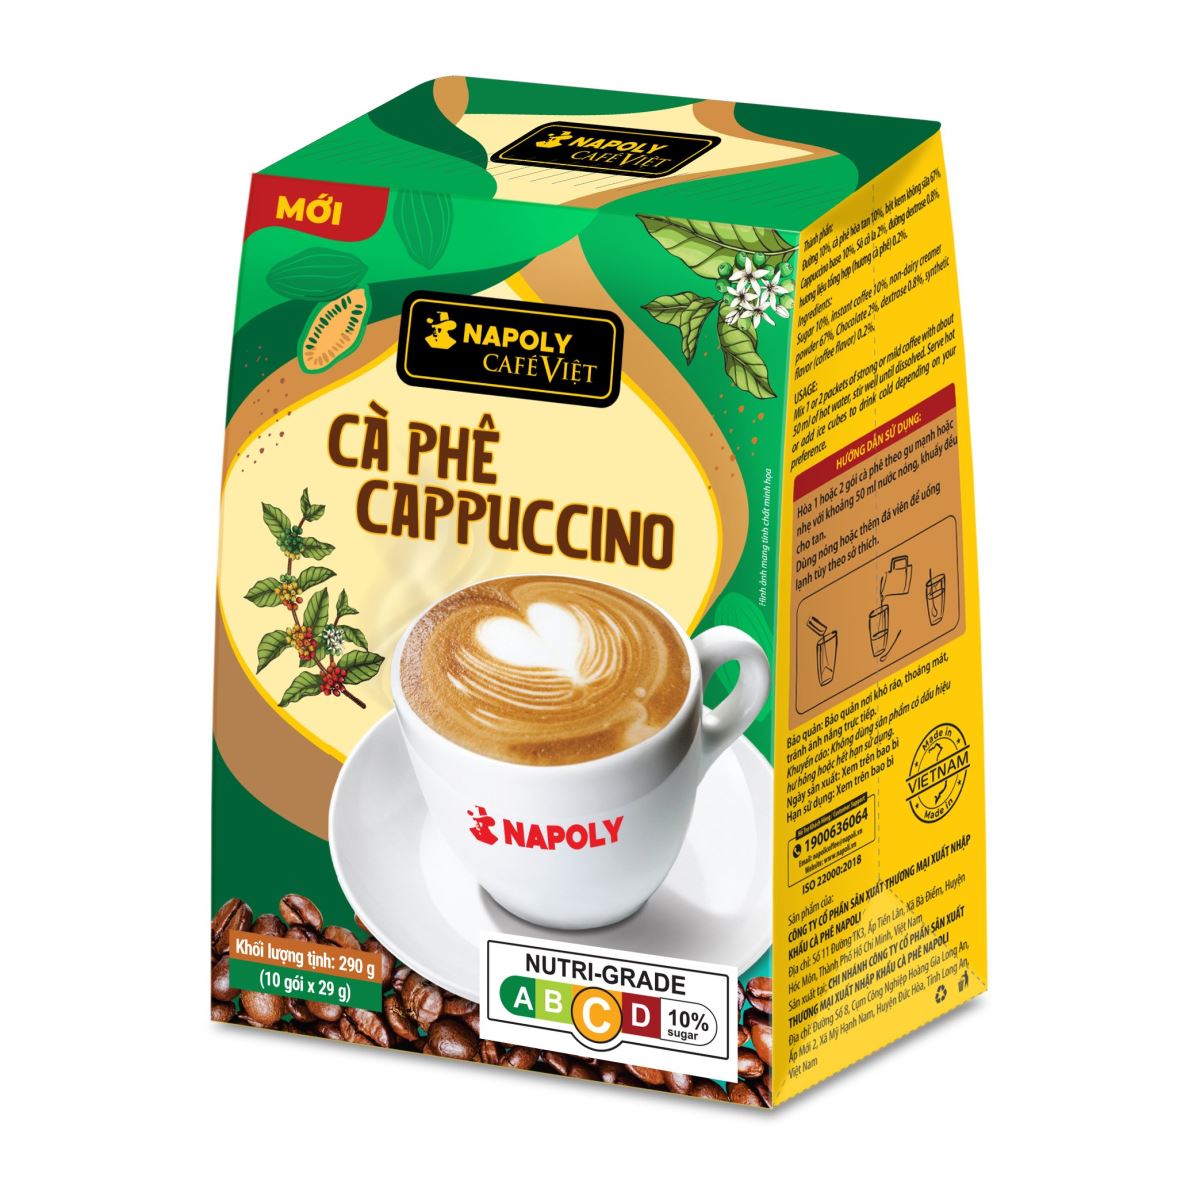       Cà phê Cappuccino - Hộp 10 gói x 29g